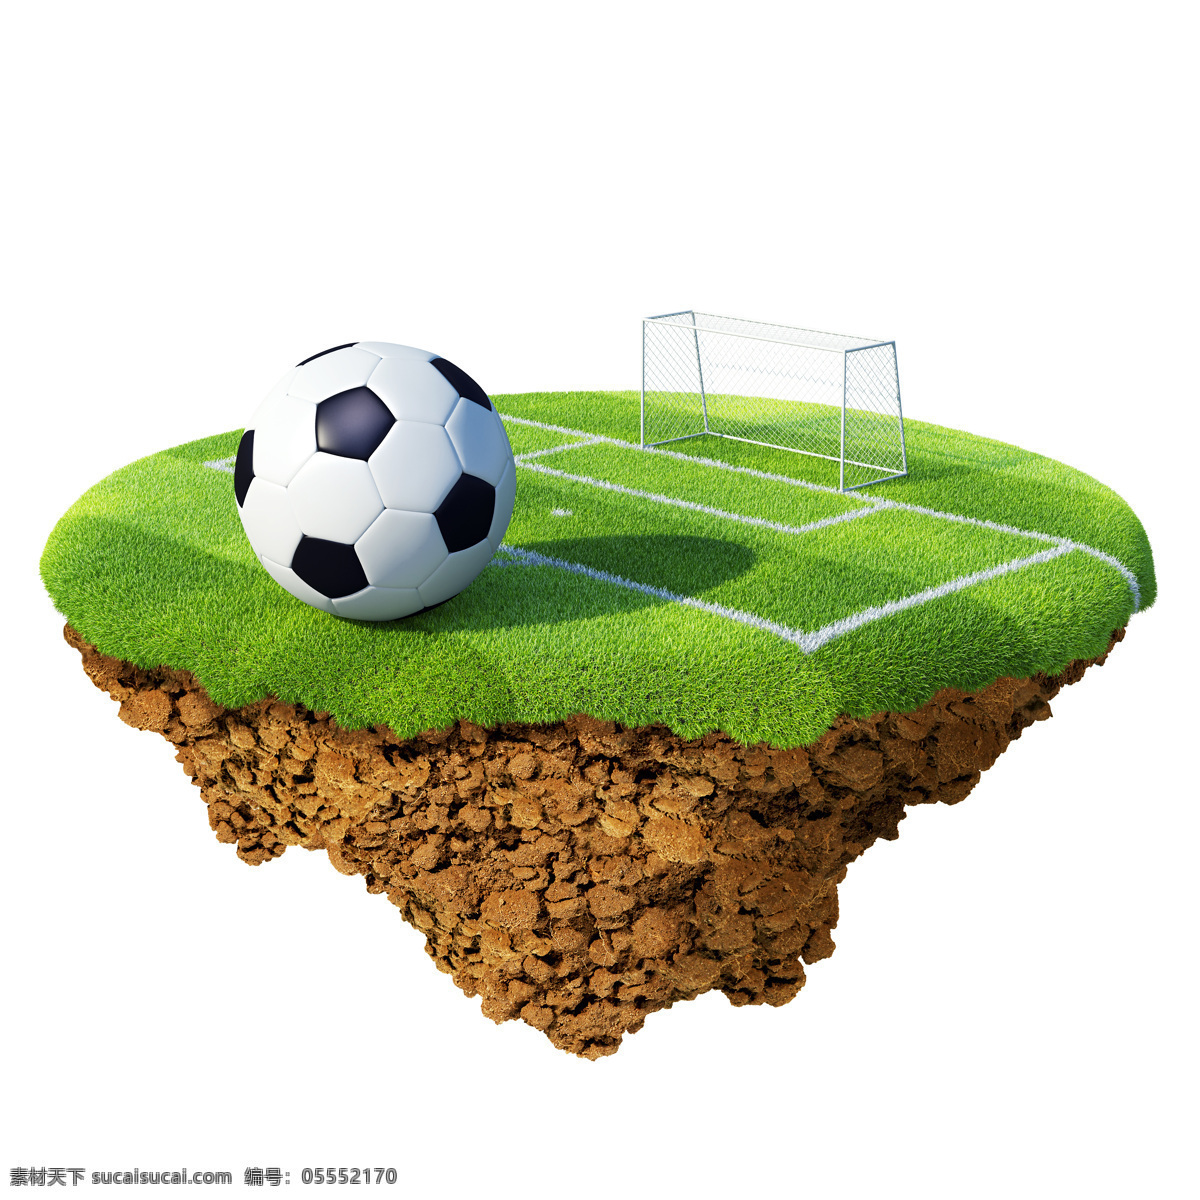 创意 足球 背景 创意背景 足球场 草地 欧洲 欧洲杯 足球摄影 足球素材 2012 摄影图库 体育运动 生活百科